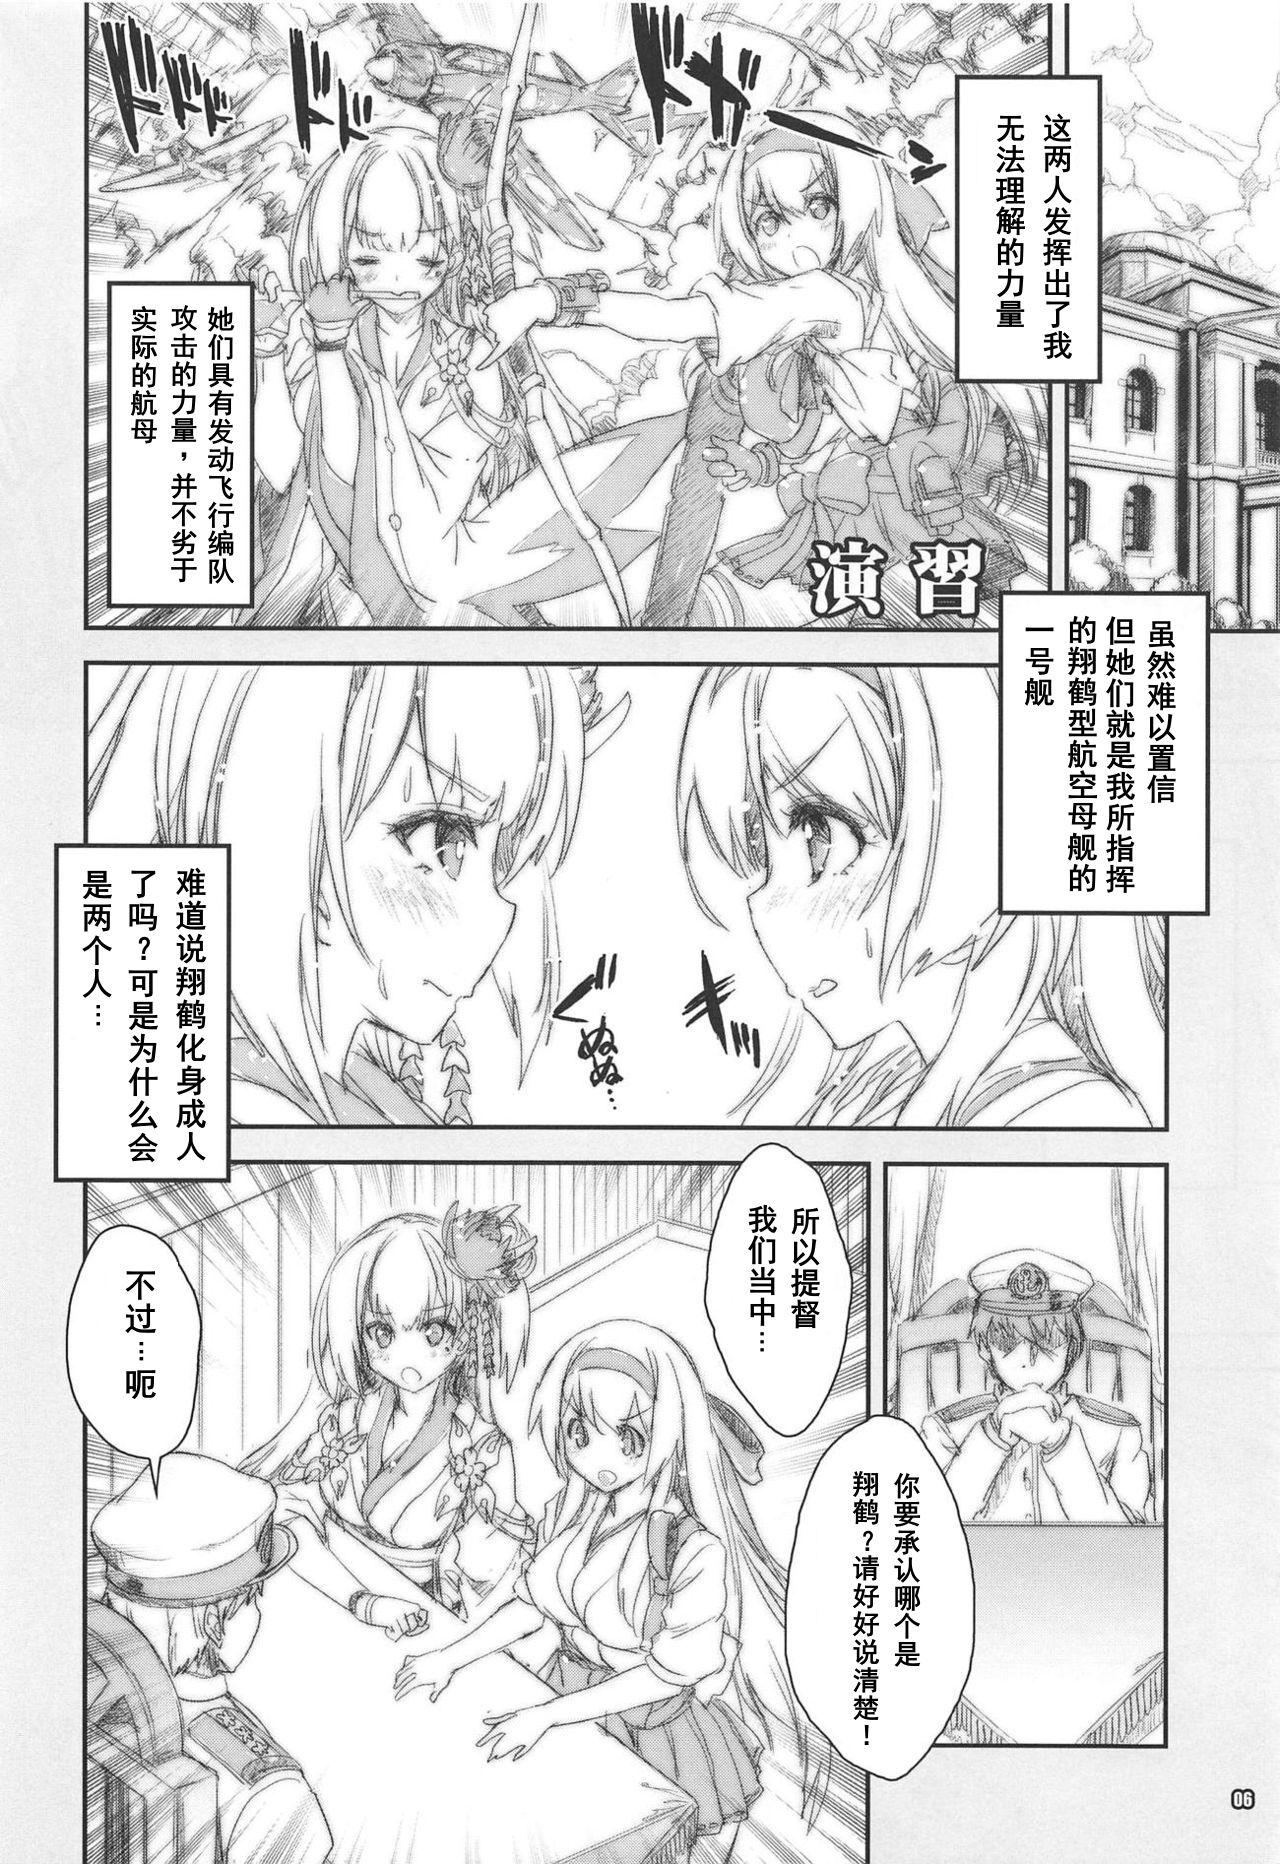 Cartoon Shoukaku Tai Shoukaku Orihon Matomebon 2 - Kantai collection Azur lane Yuru camp | laid back camp Climax - Page 5